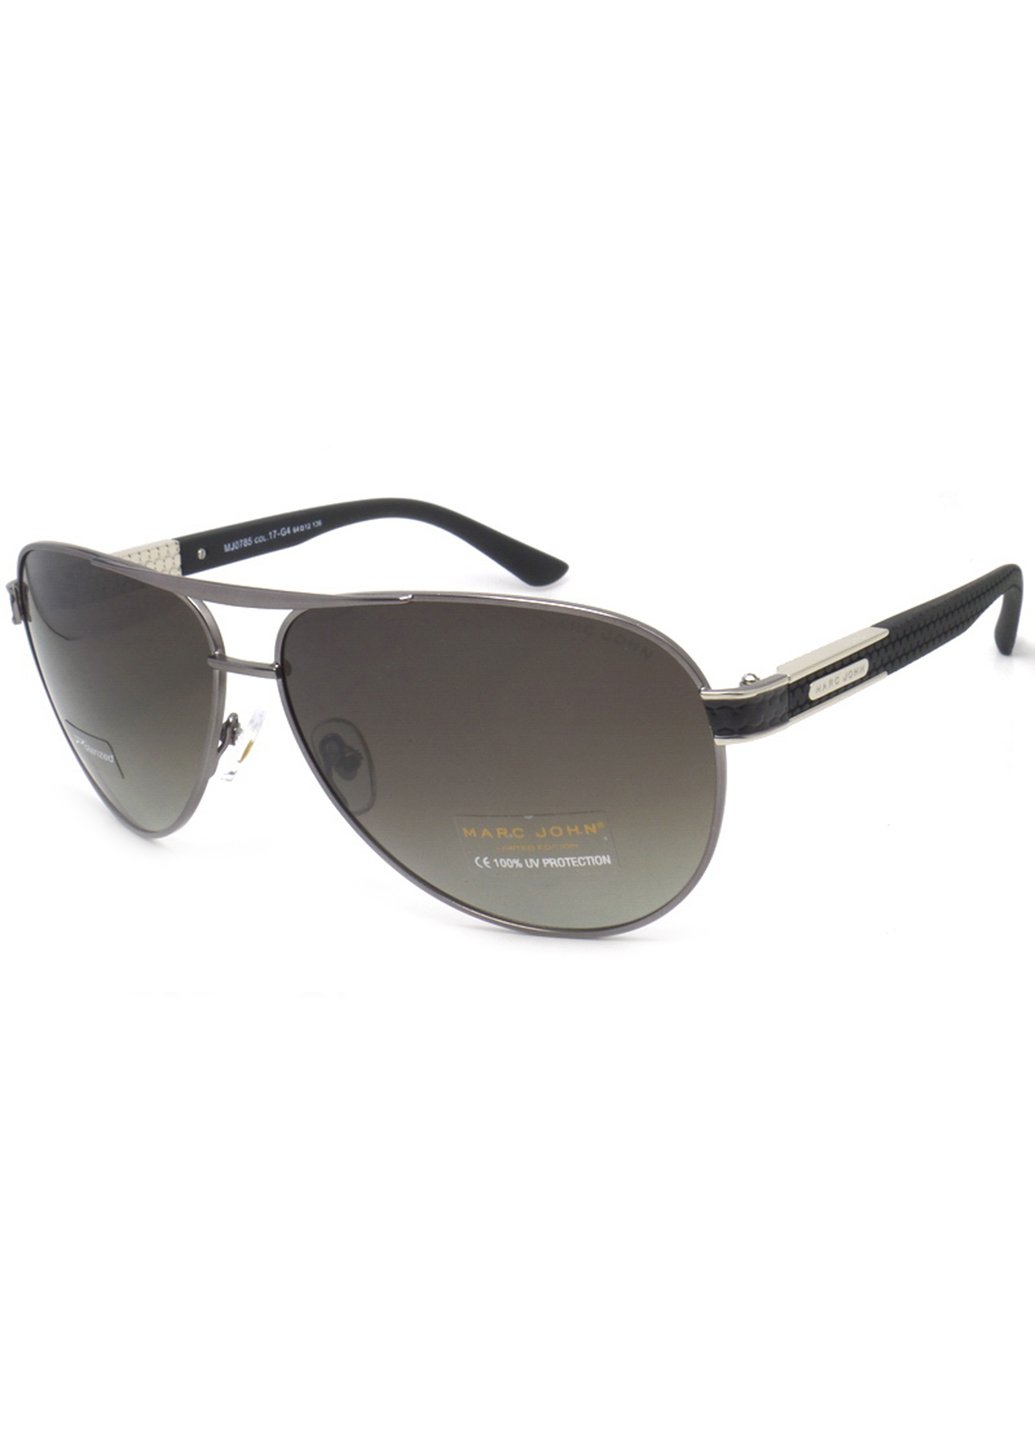 Купить Мужские солнцезащитные очки Marc John с поляризацией MJ0785 190022 - Серый в интернет-магазине